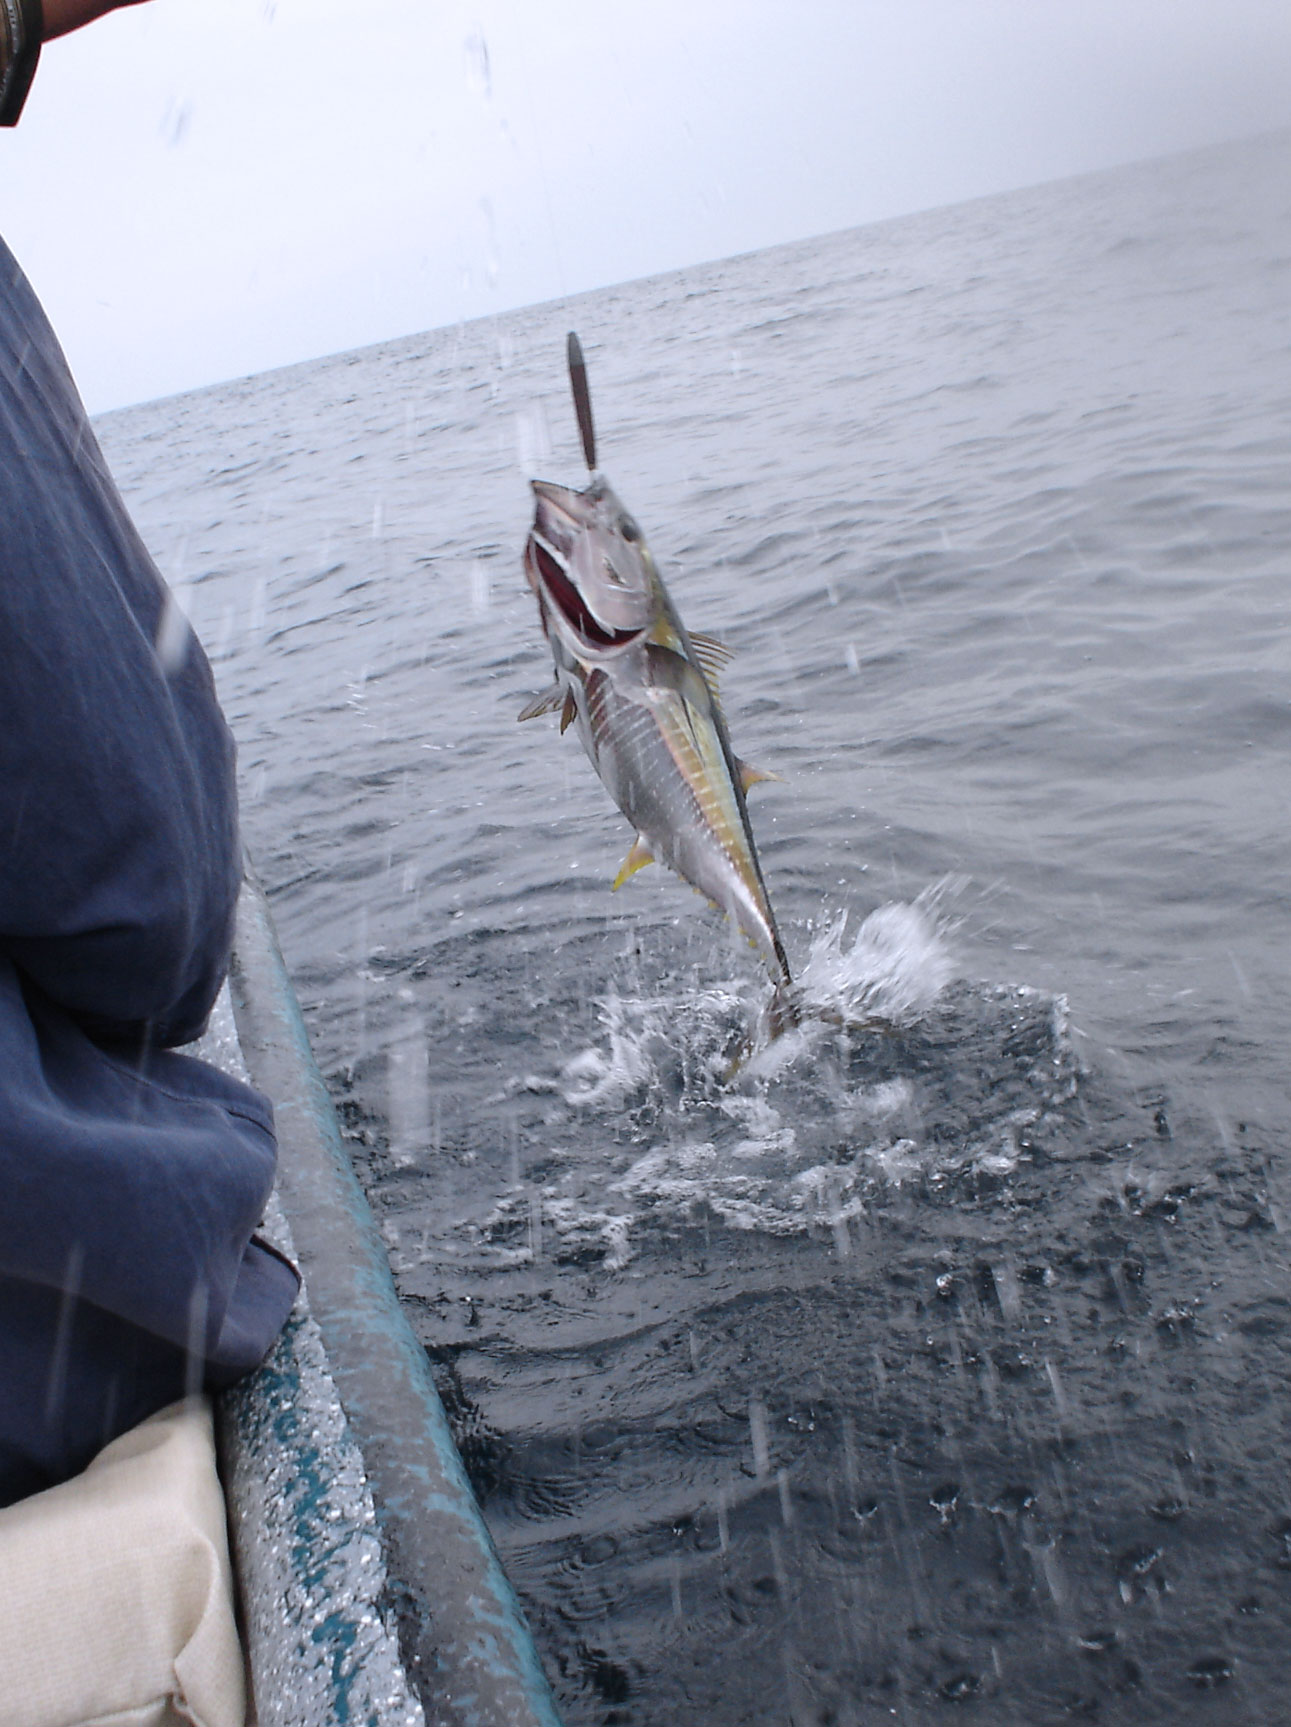 Yellowfin Tuna Fishing In Panama.